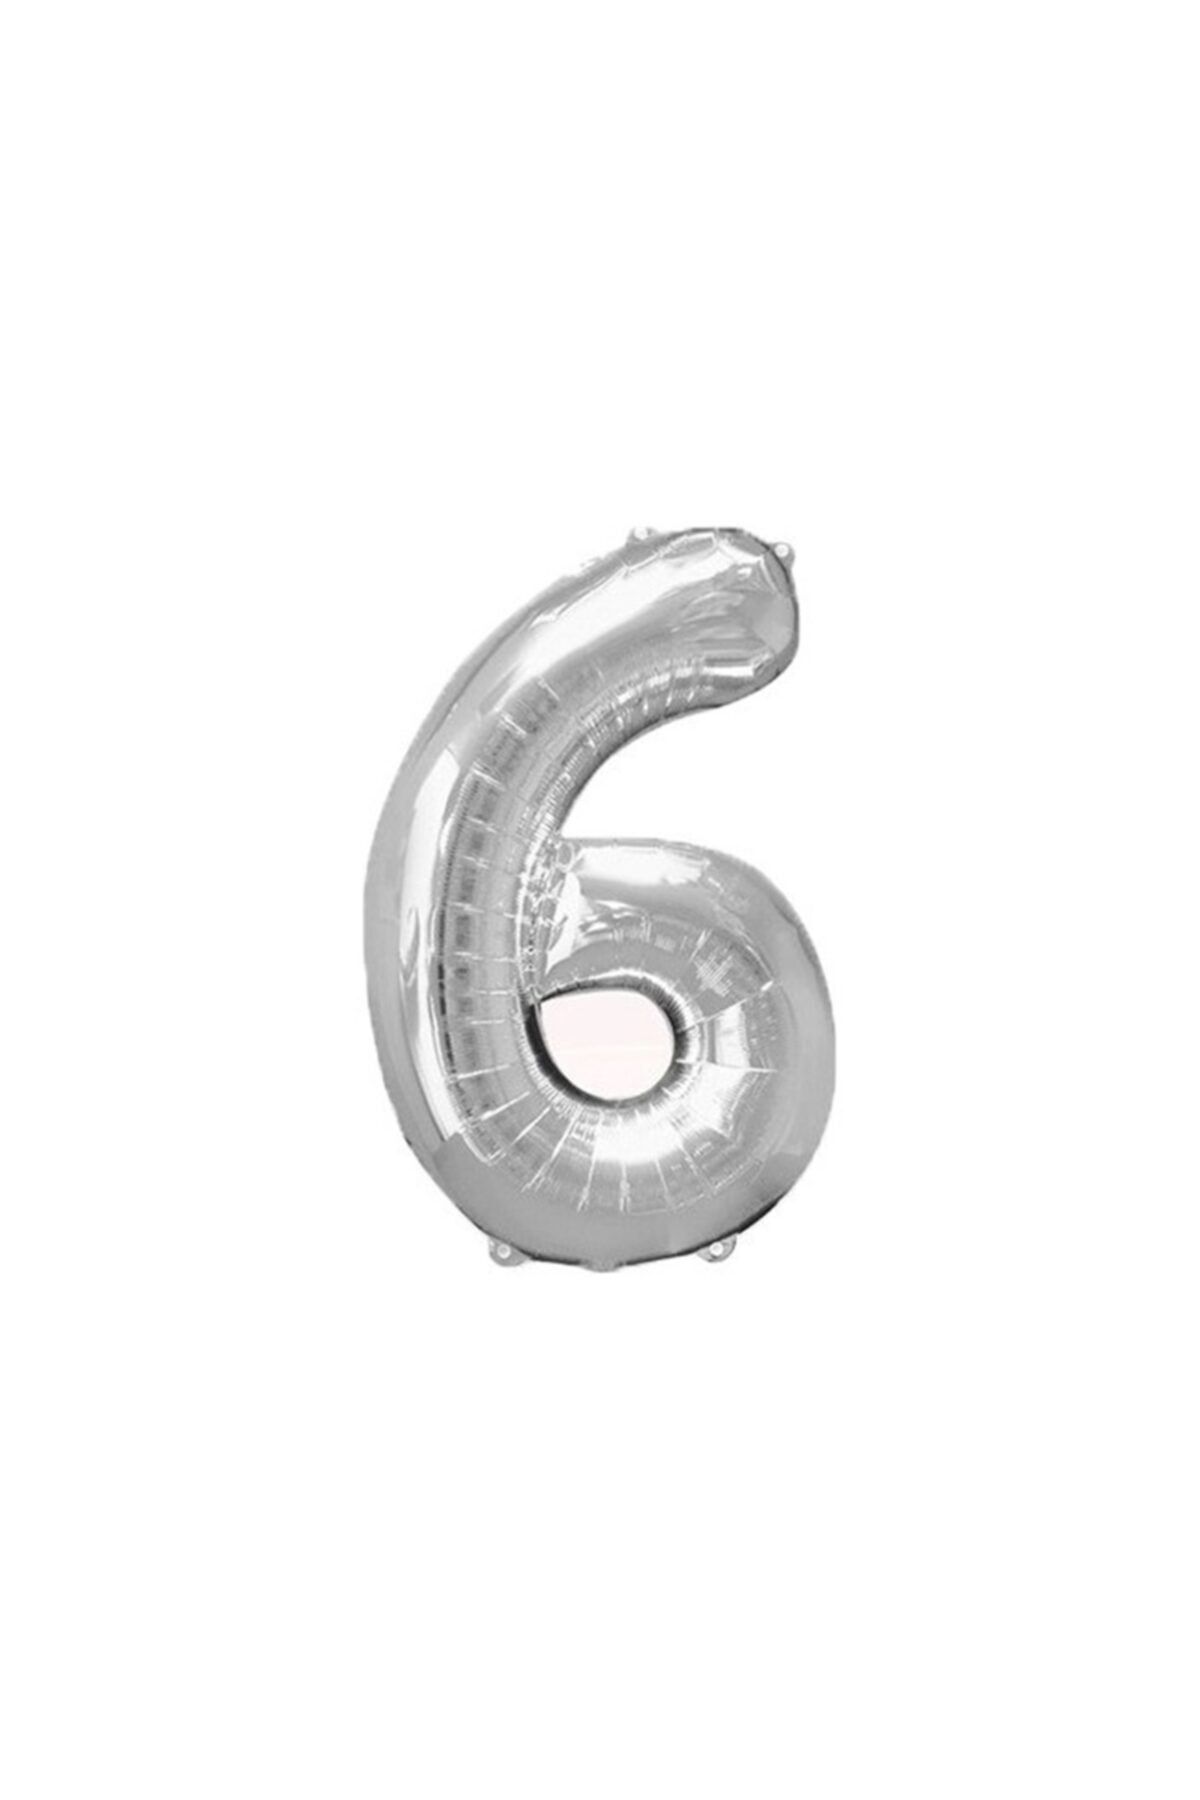 Ece Folyo Gümüş 6 Sayı Balon Büyük Boy 100 cm Helyum Kaliteli Organizasyon Doğum Günü Eğlence Söz Nişan